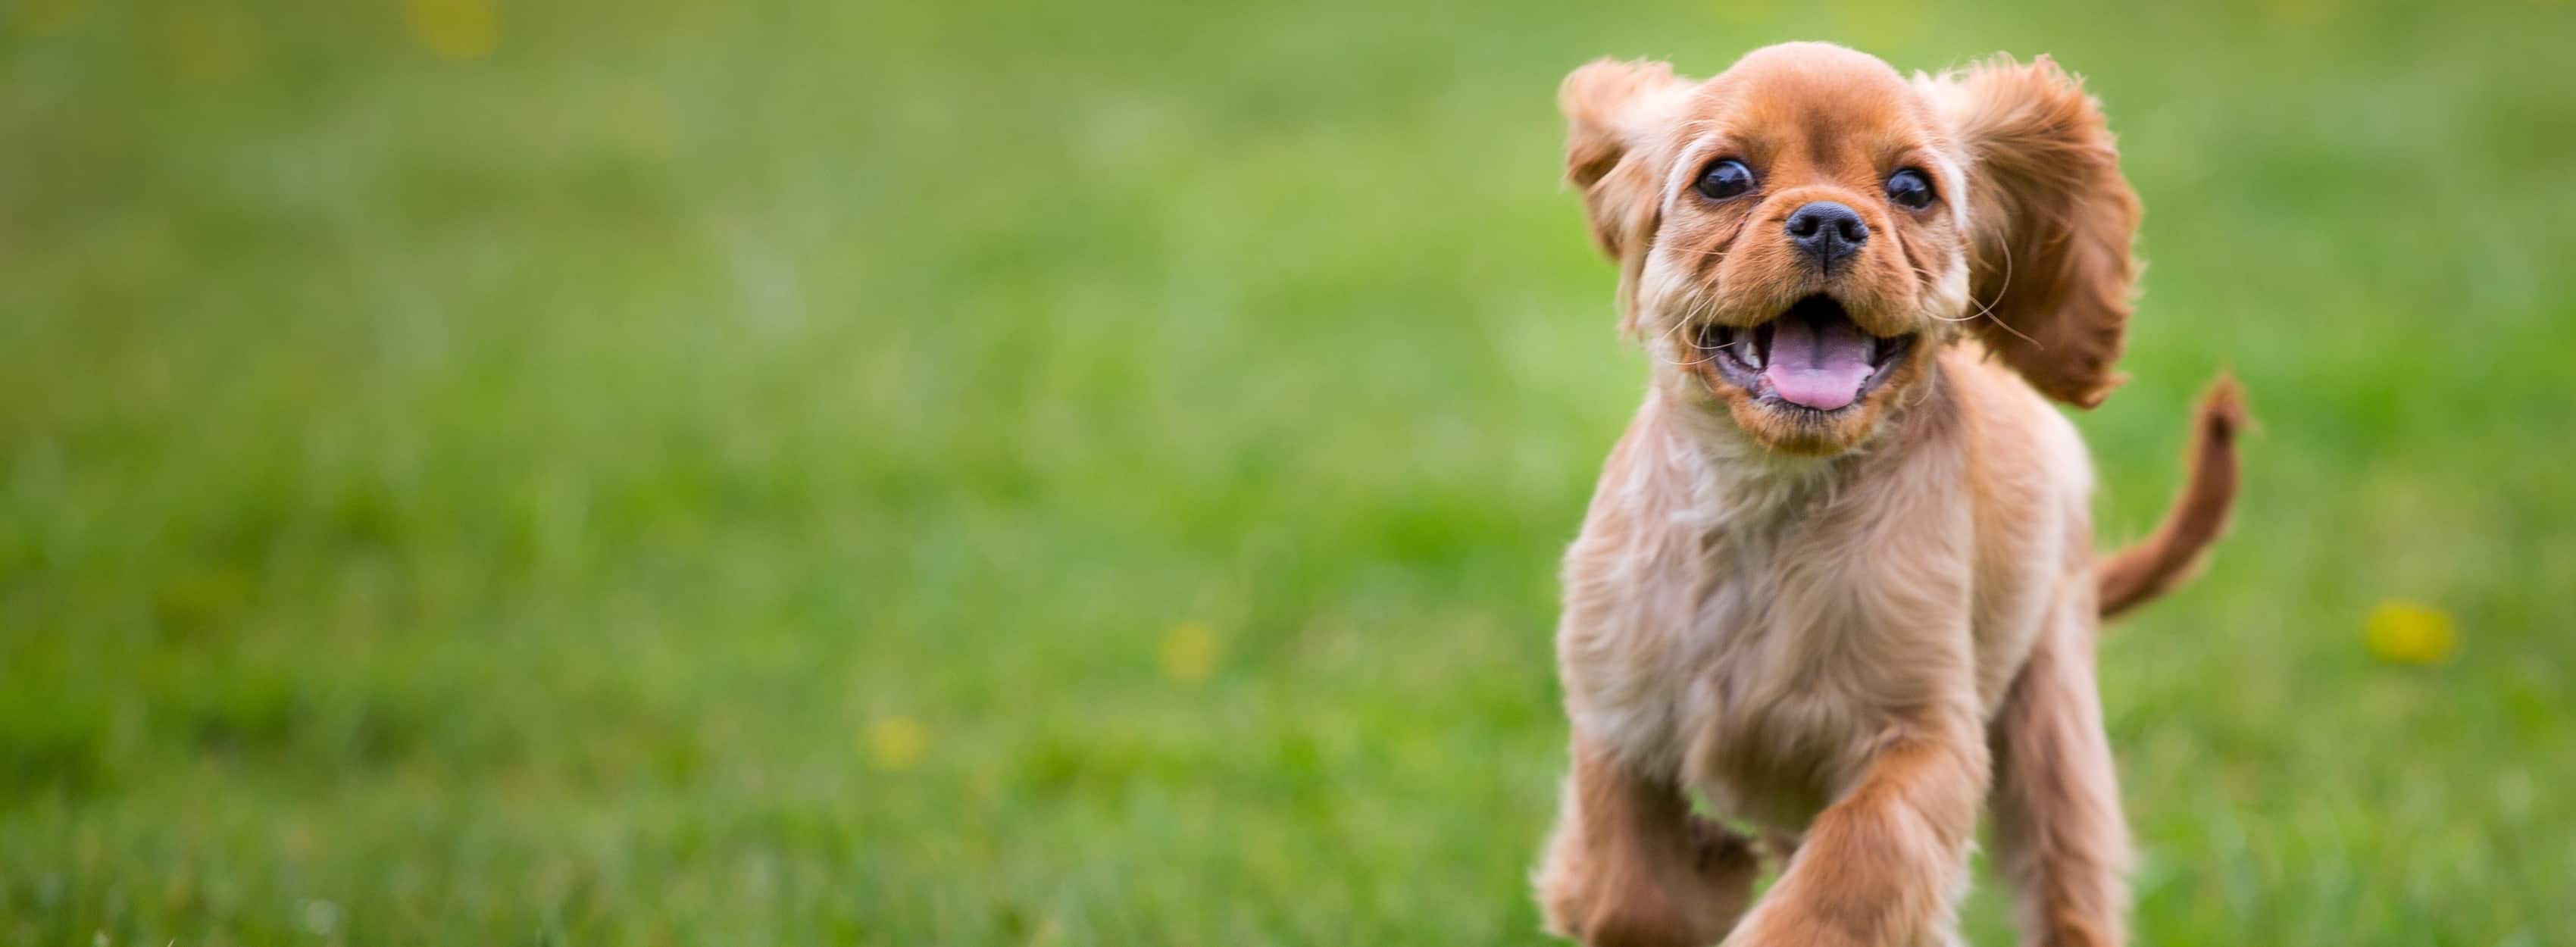 Lille brun hund løber gennem en græsmark.